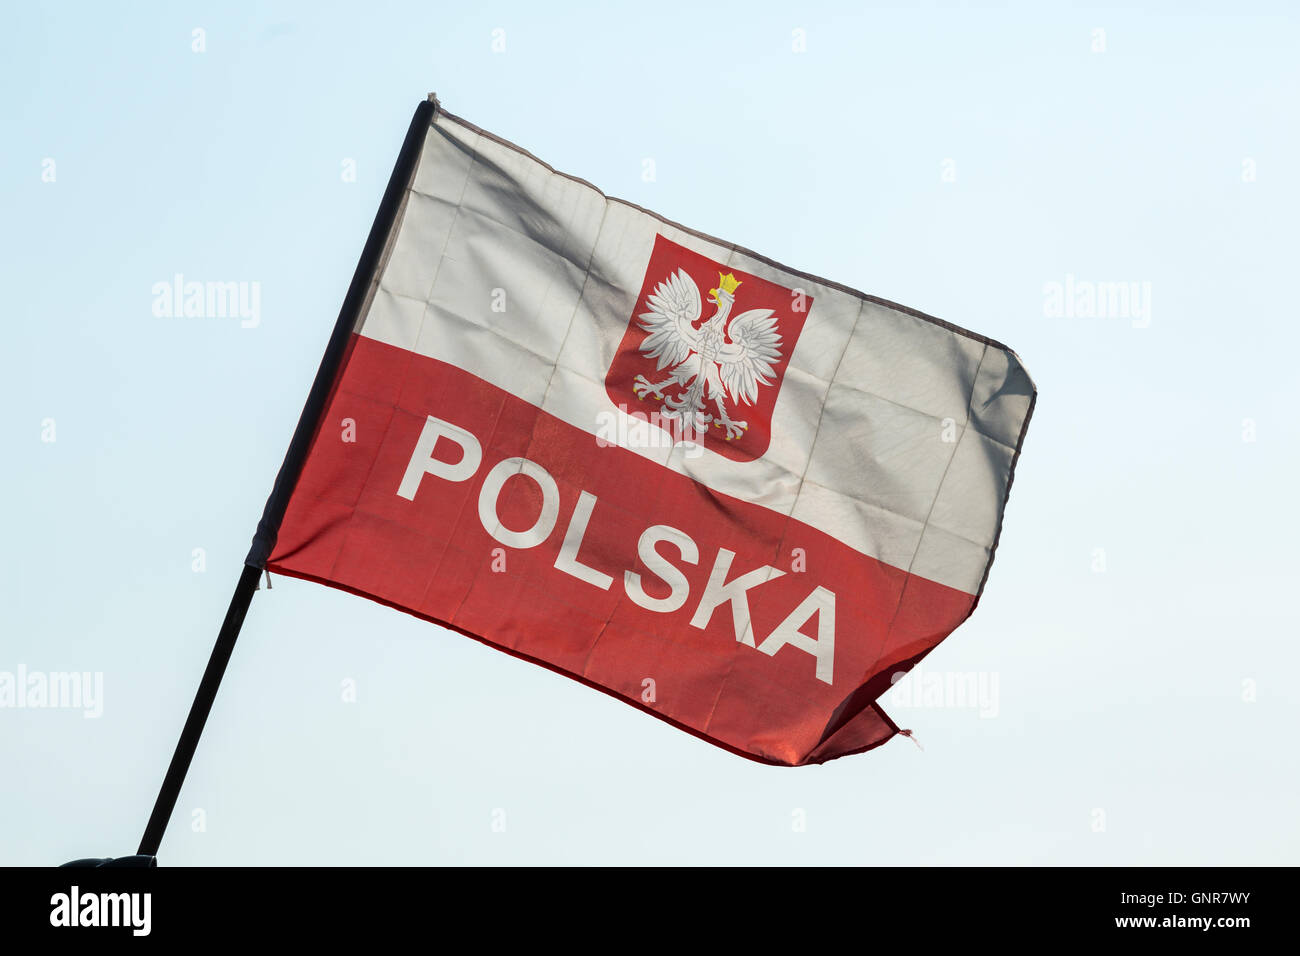 Drapeau Pologne - Acheter drapeaux polonais pas cher - Monsieur-des-Drapeaux